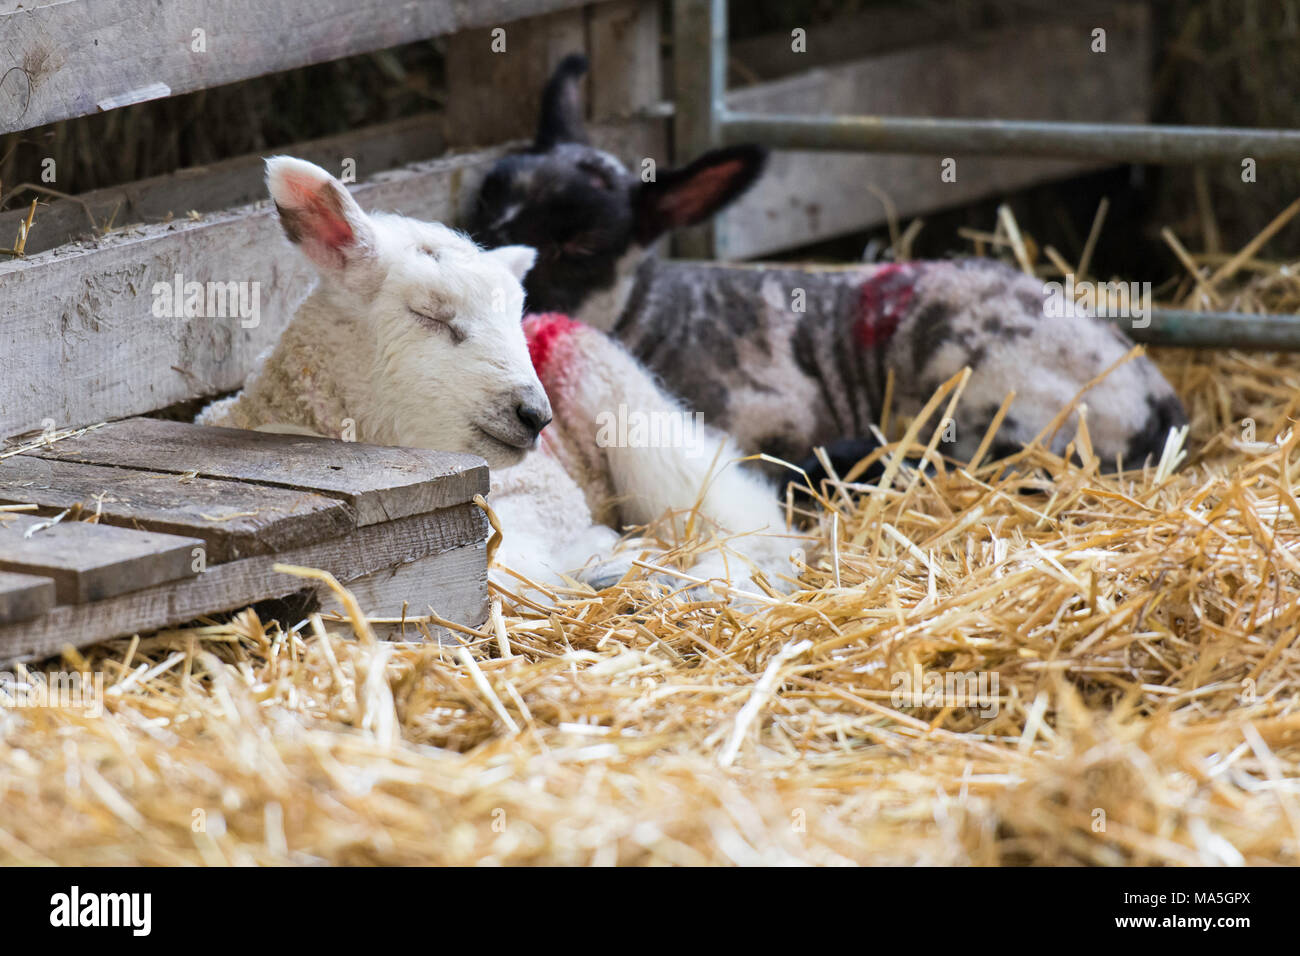 Un agneau endormi dans une grange appuyé contre une palette en bois Banque D'Images